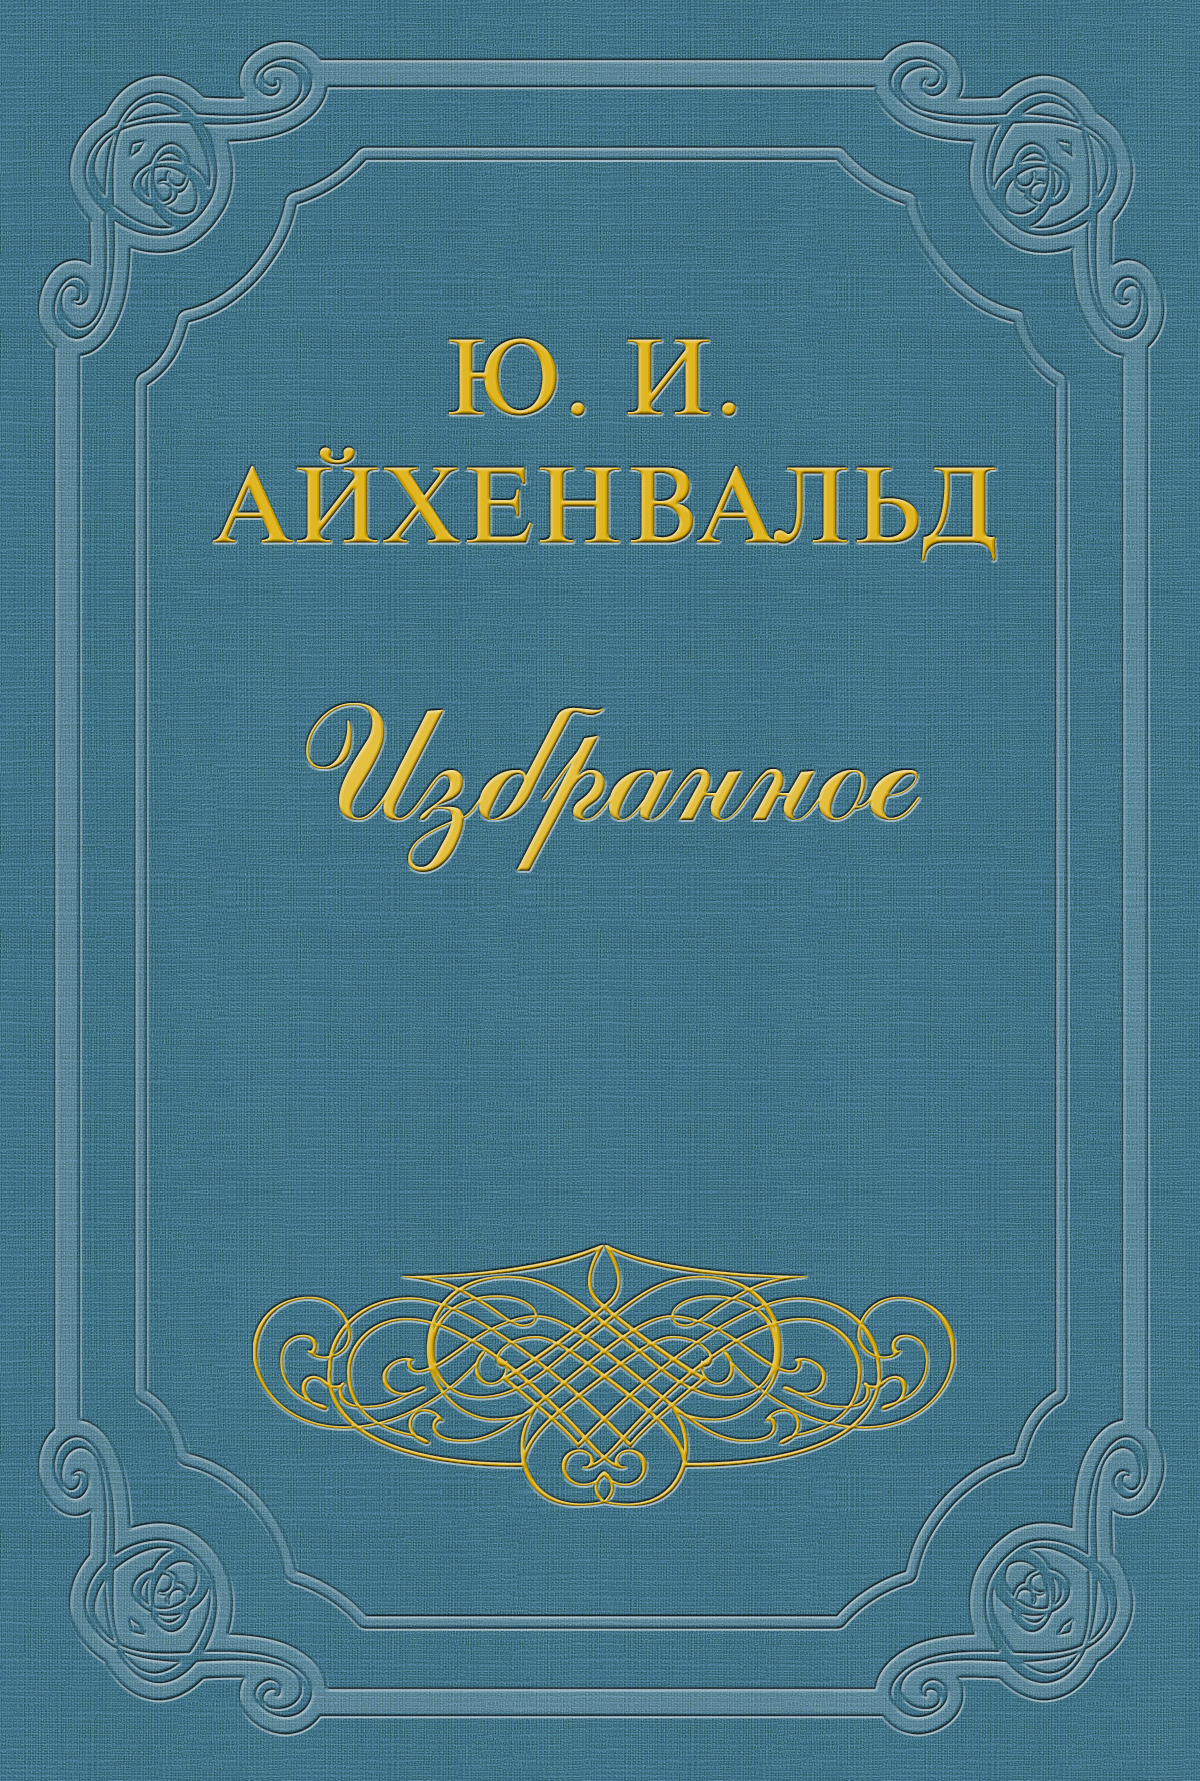 Книга Владимир Соловьев из серии , созданная Юлий Айхенвальд, может относится к жанру Критика. Стоимость книги Владимир Соловьев  с идентификатором 2595065 составляет 5.99 руб.